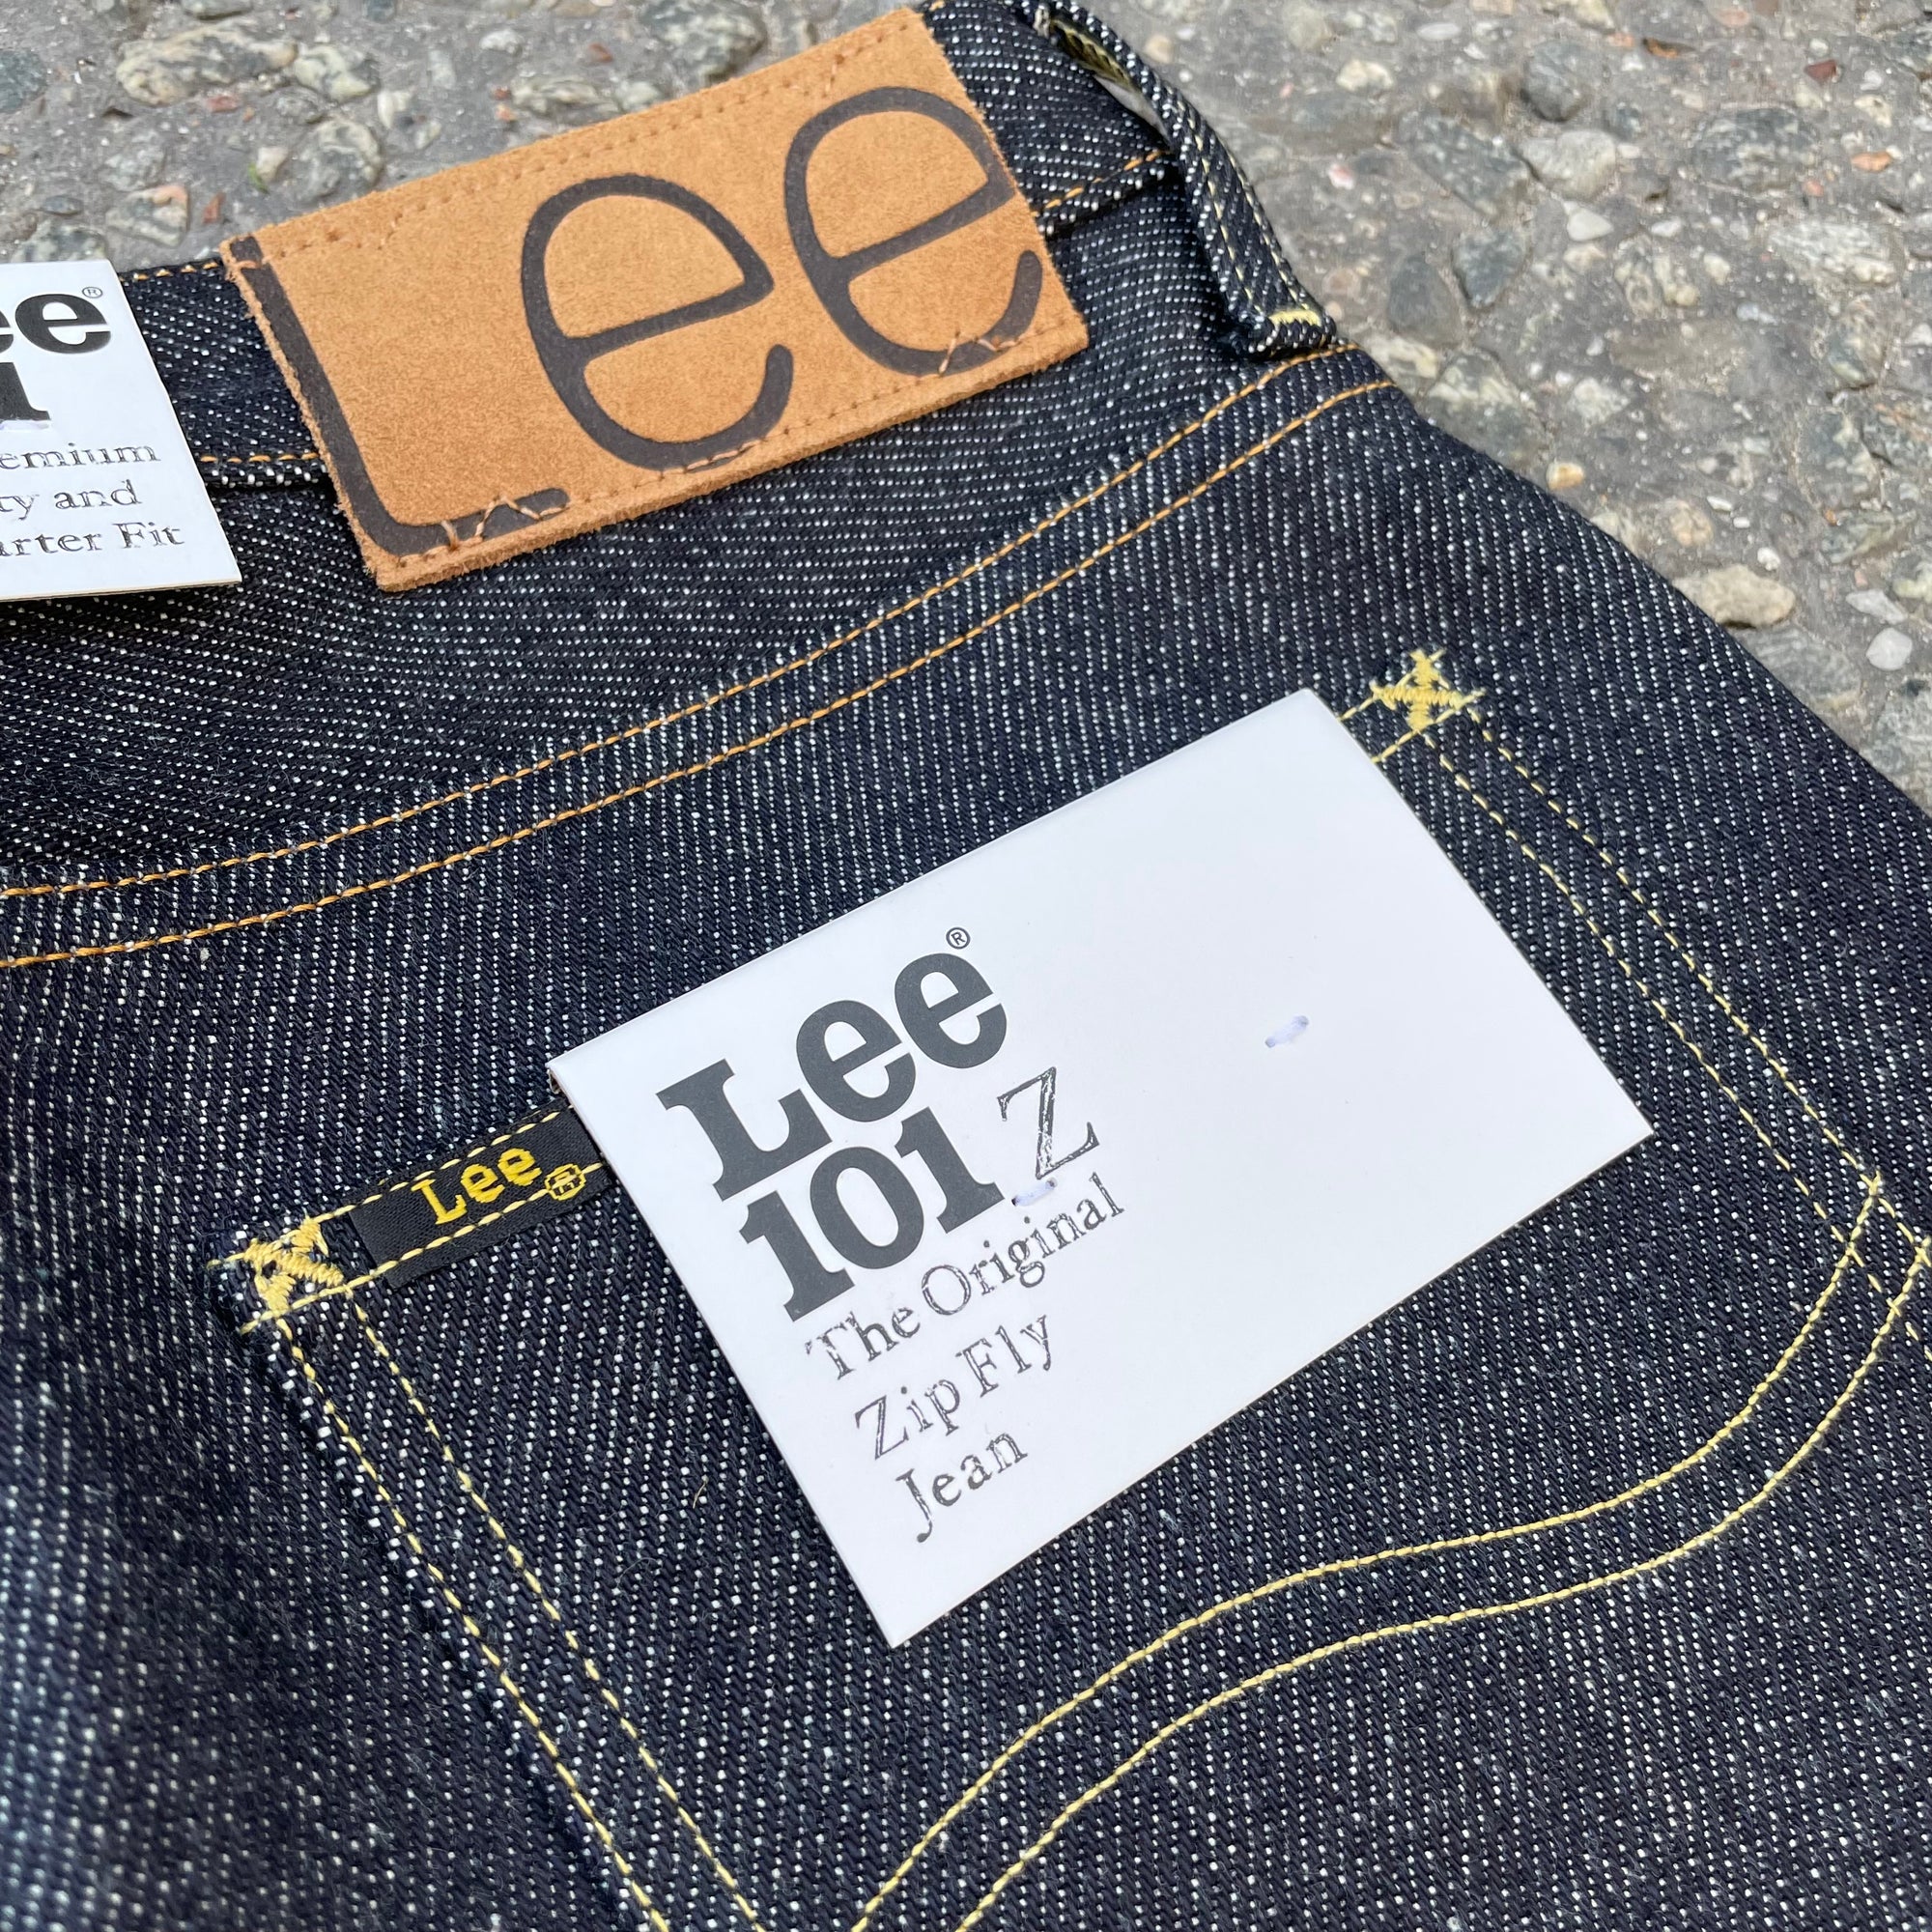 Lee 101 - Raw Denim Jeans and Shirts Online - Brund.dk